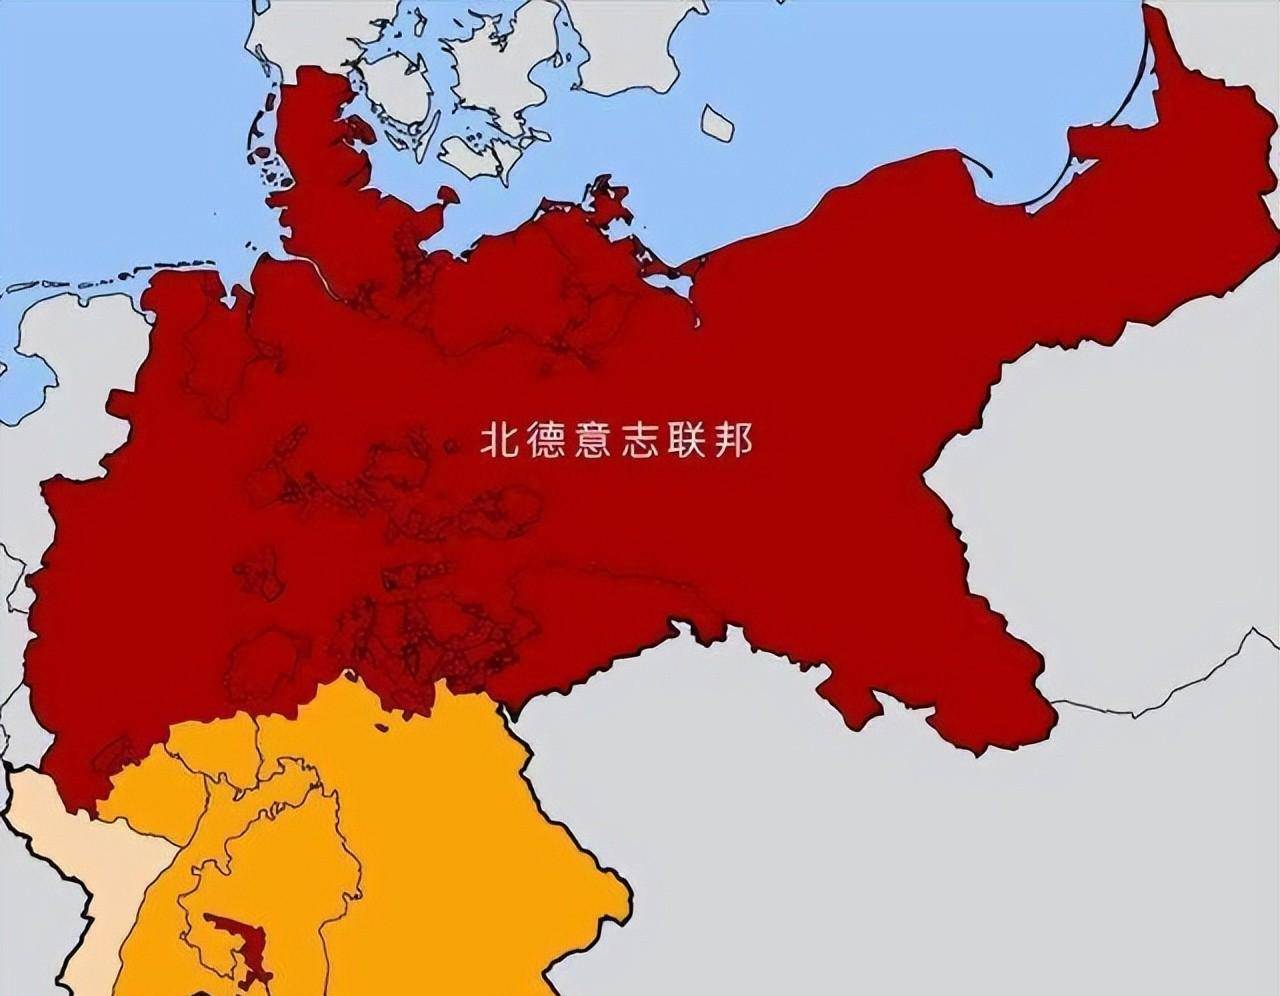 两次世界大战之后,德国失去了多少领土?